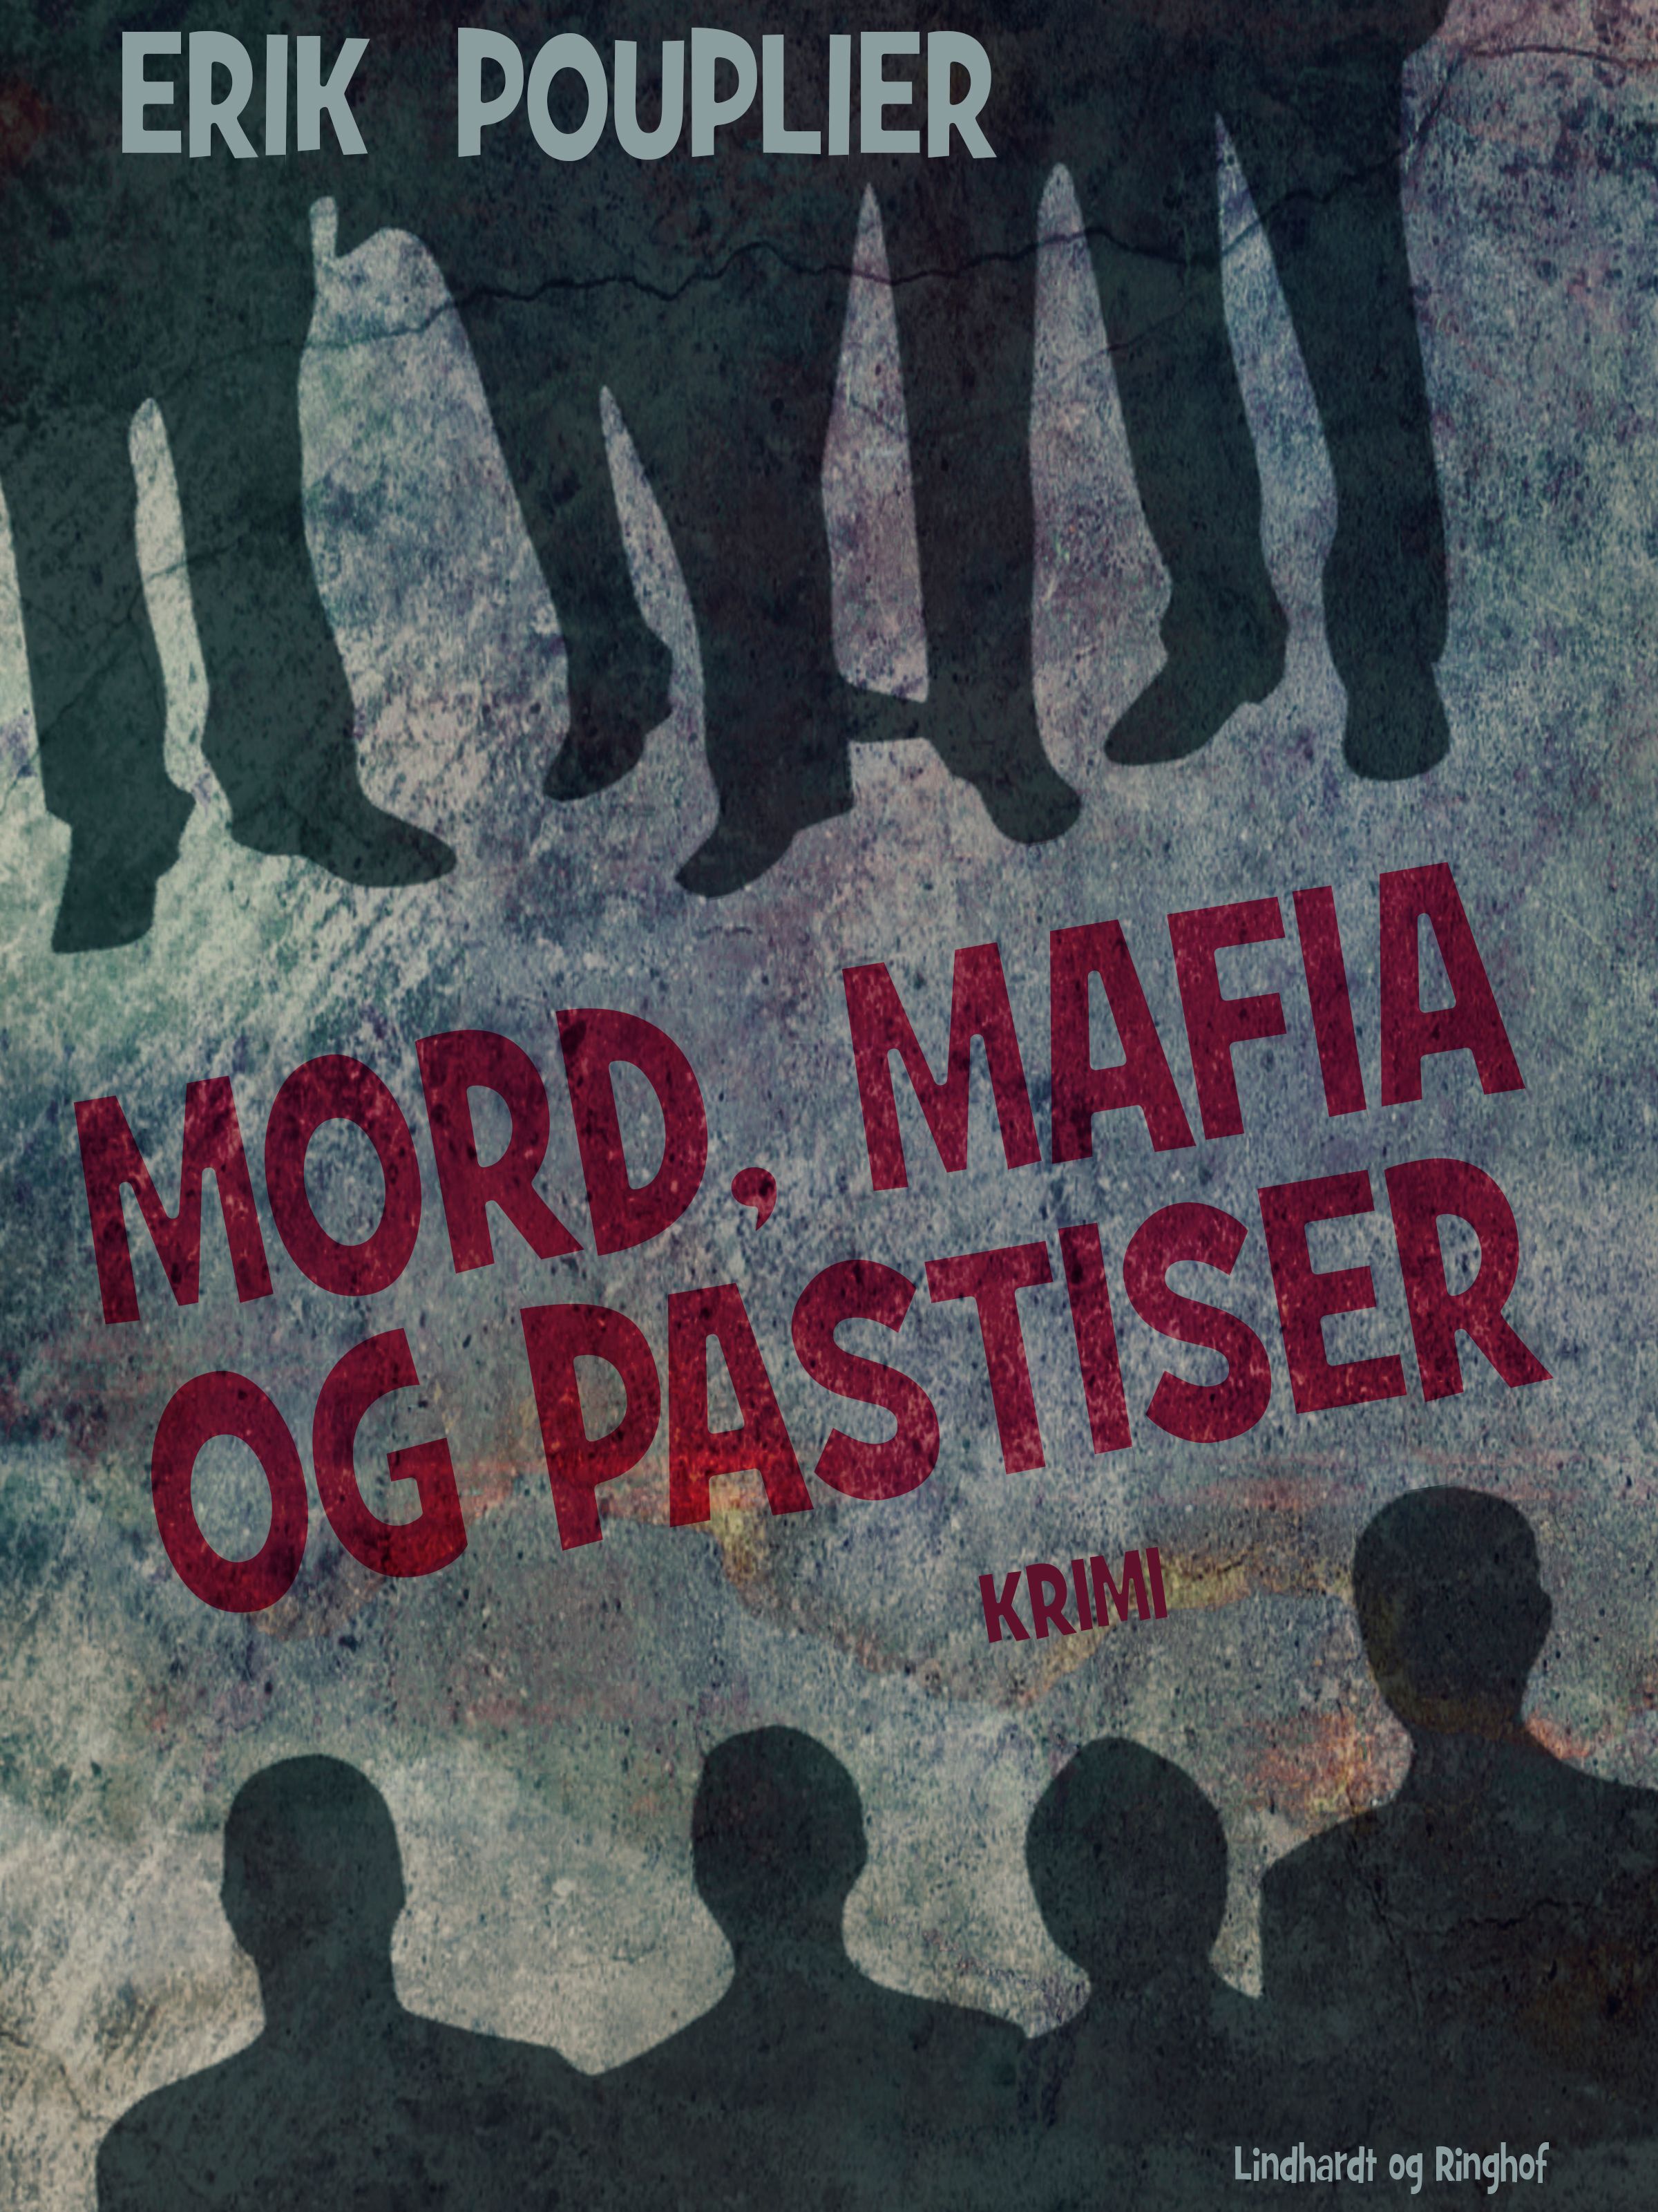 Mord, mafia og pastiser, e-bok av Erik Pouplier